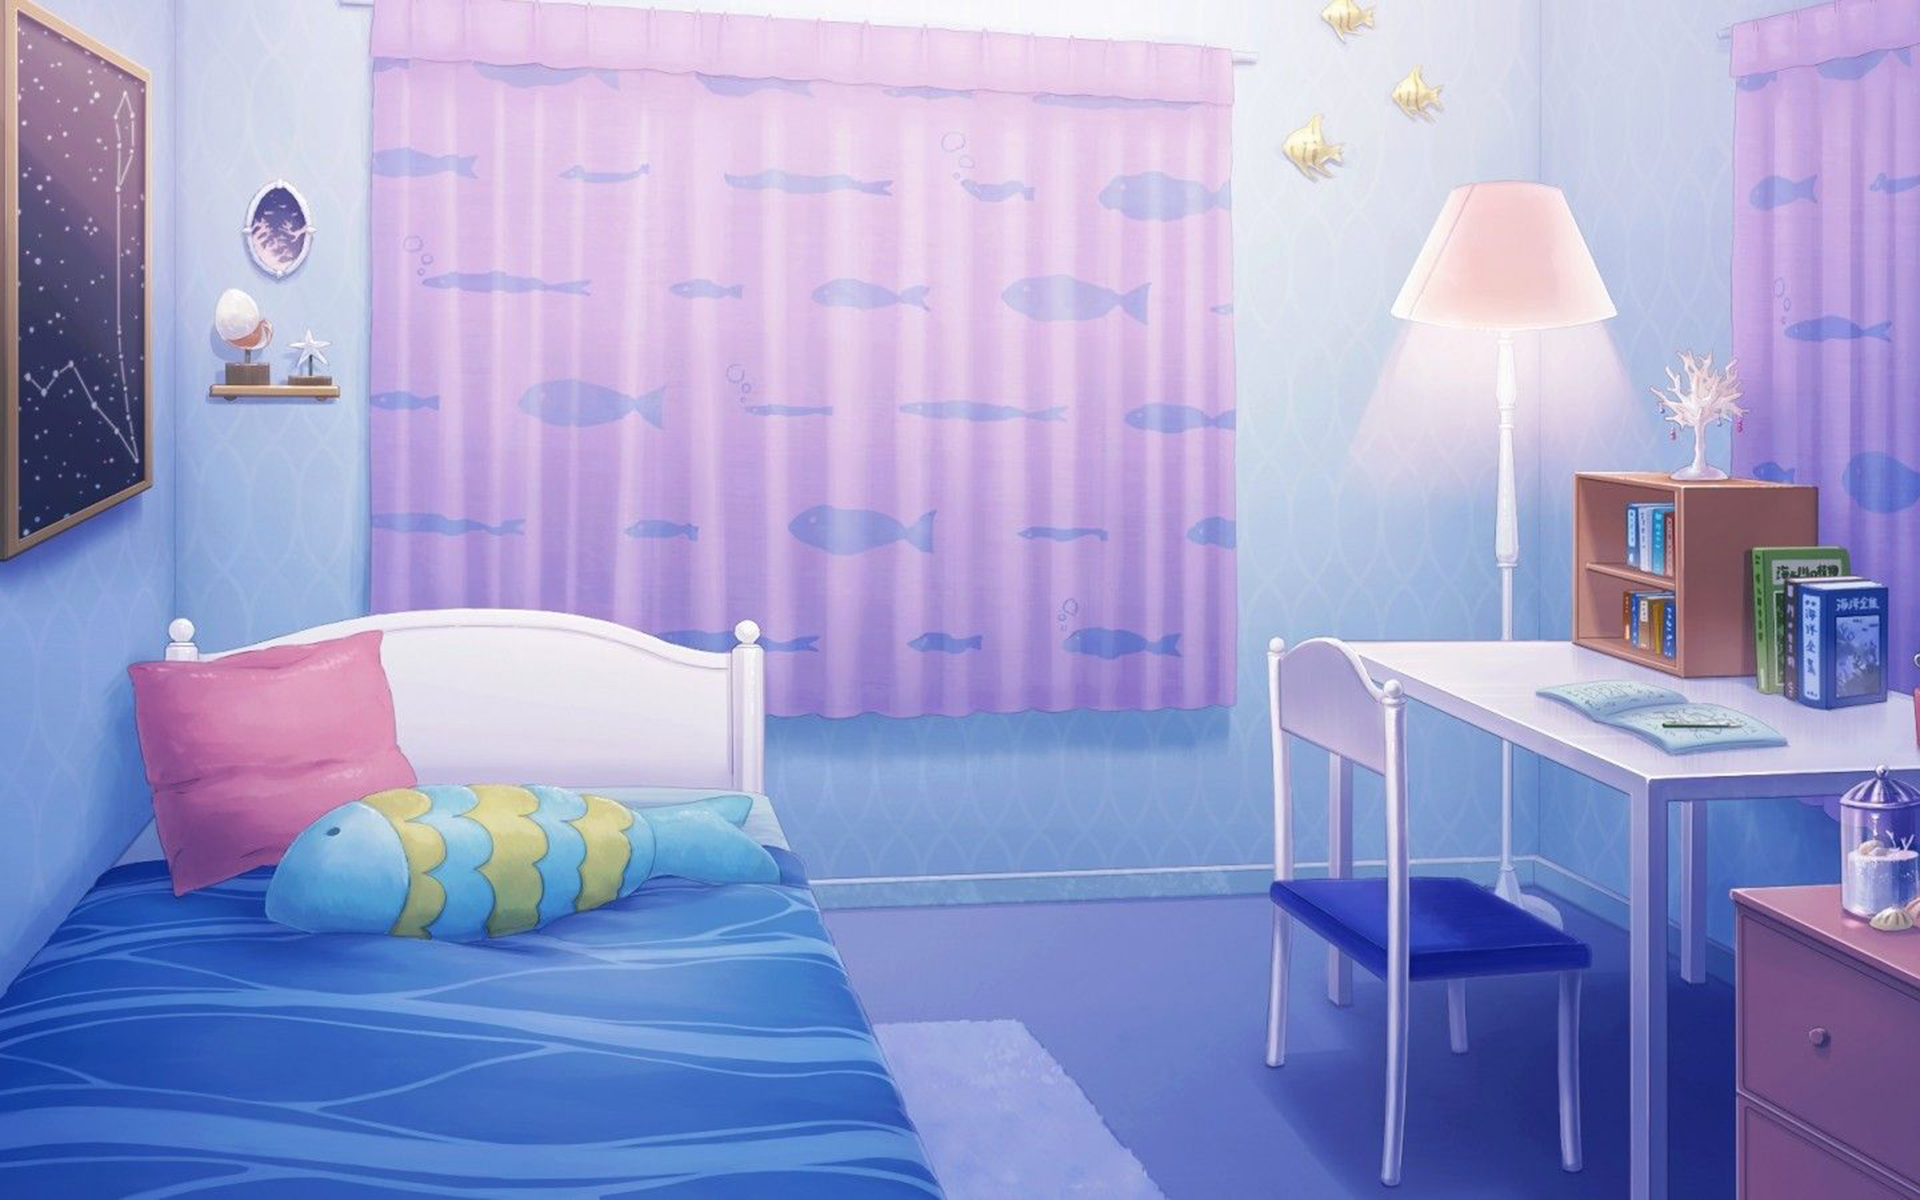 Phòng ngủ anime với phong cách thẩm mỹ đồng điệu sẽ khiến bạn cảm thấy bắt mắt và như đang say mê trong không gian sống trong mộng. Hãy cùng xem hình ảnh này và đi vào thế giới kì diệu của phòng ngủ nhé.